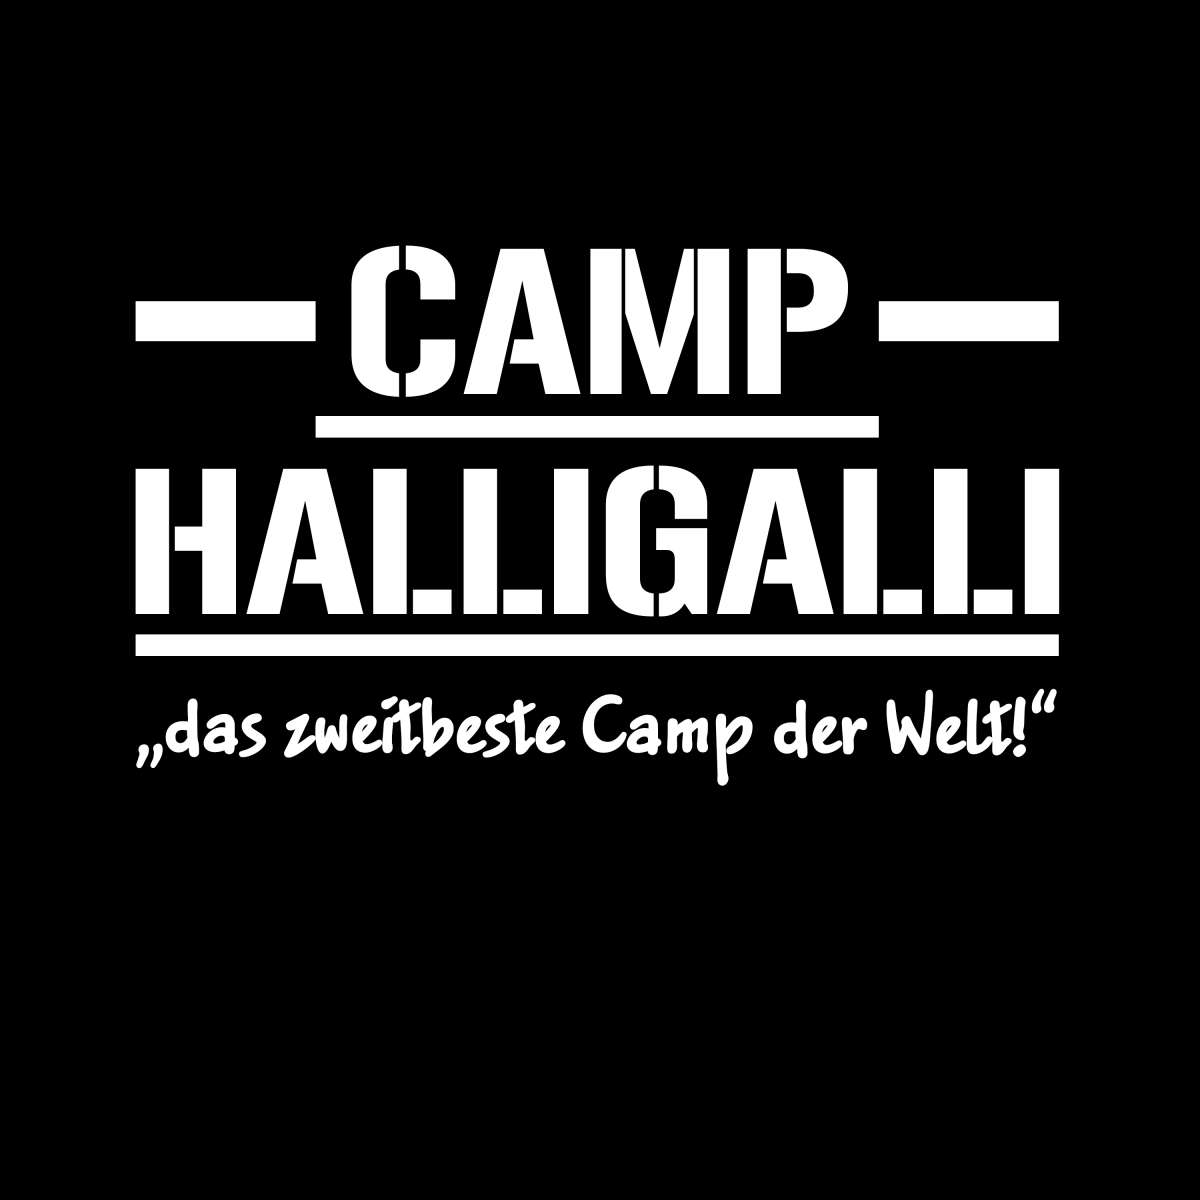 Camp HalliGalli